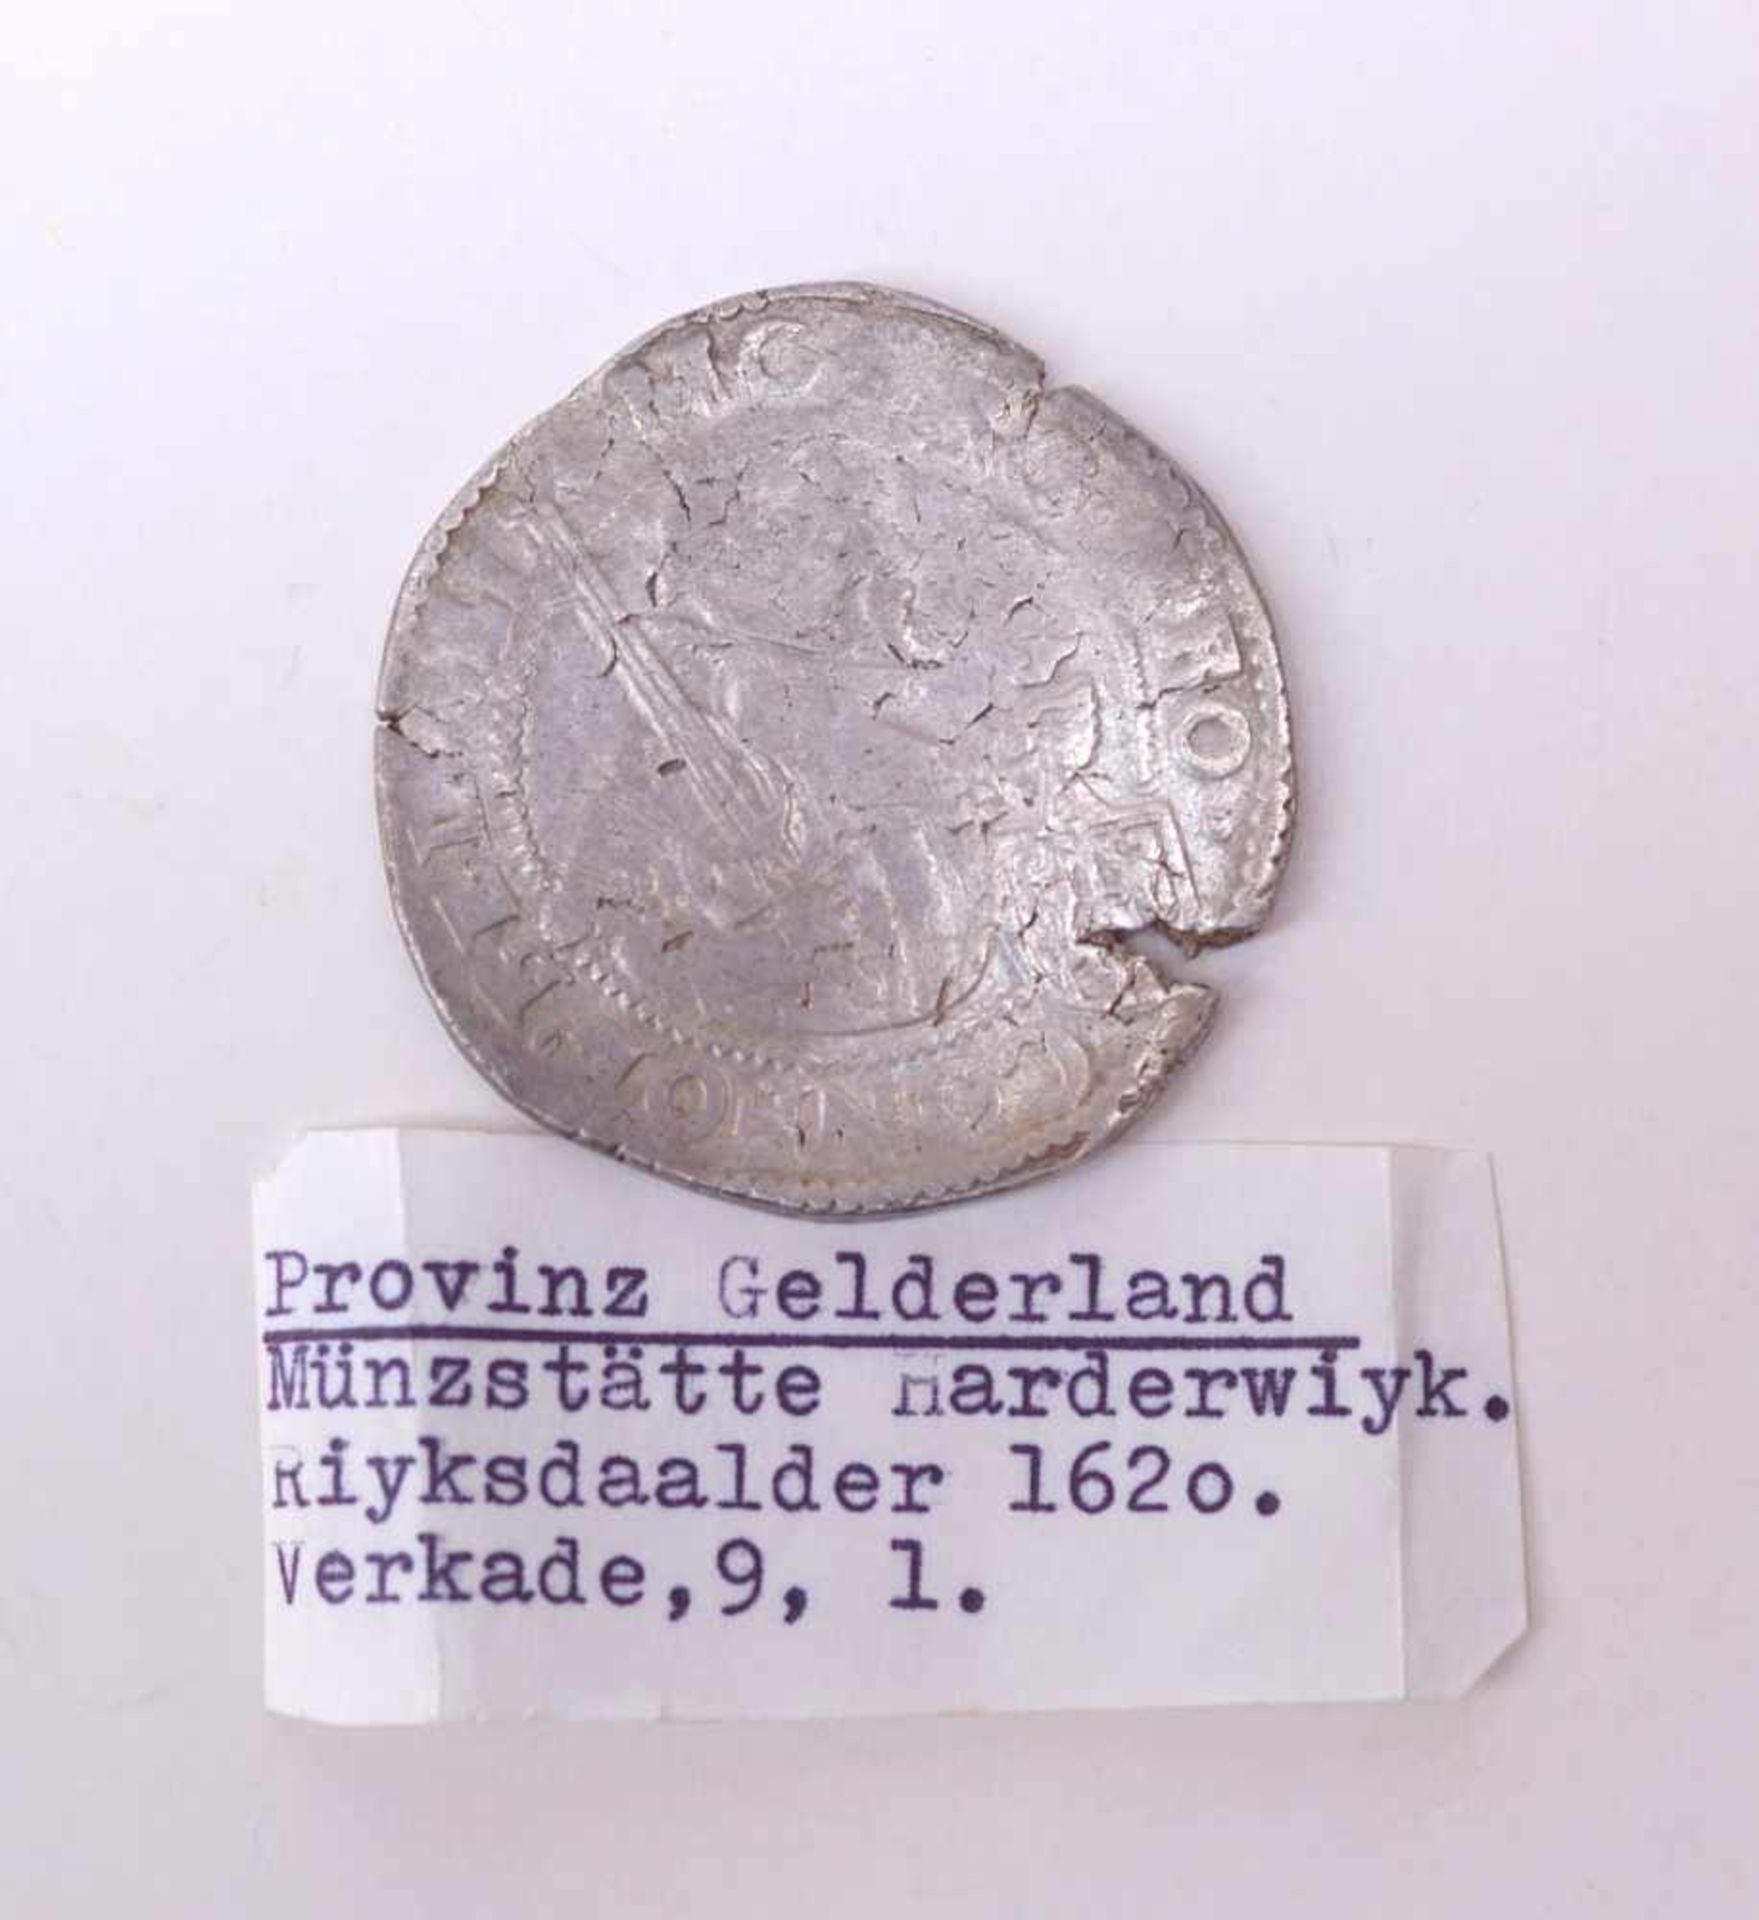 Provinz Gelderland, Riyksdaalder von 1620VS: Bekröntes Wappenschild zwischen Jahreszahl 1620, - Bild 2 aus 2